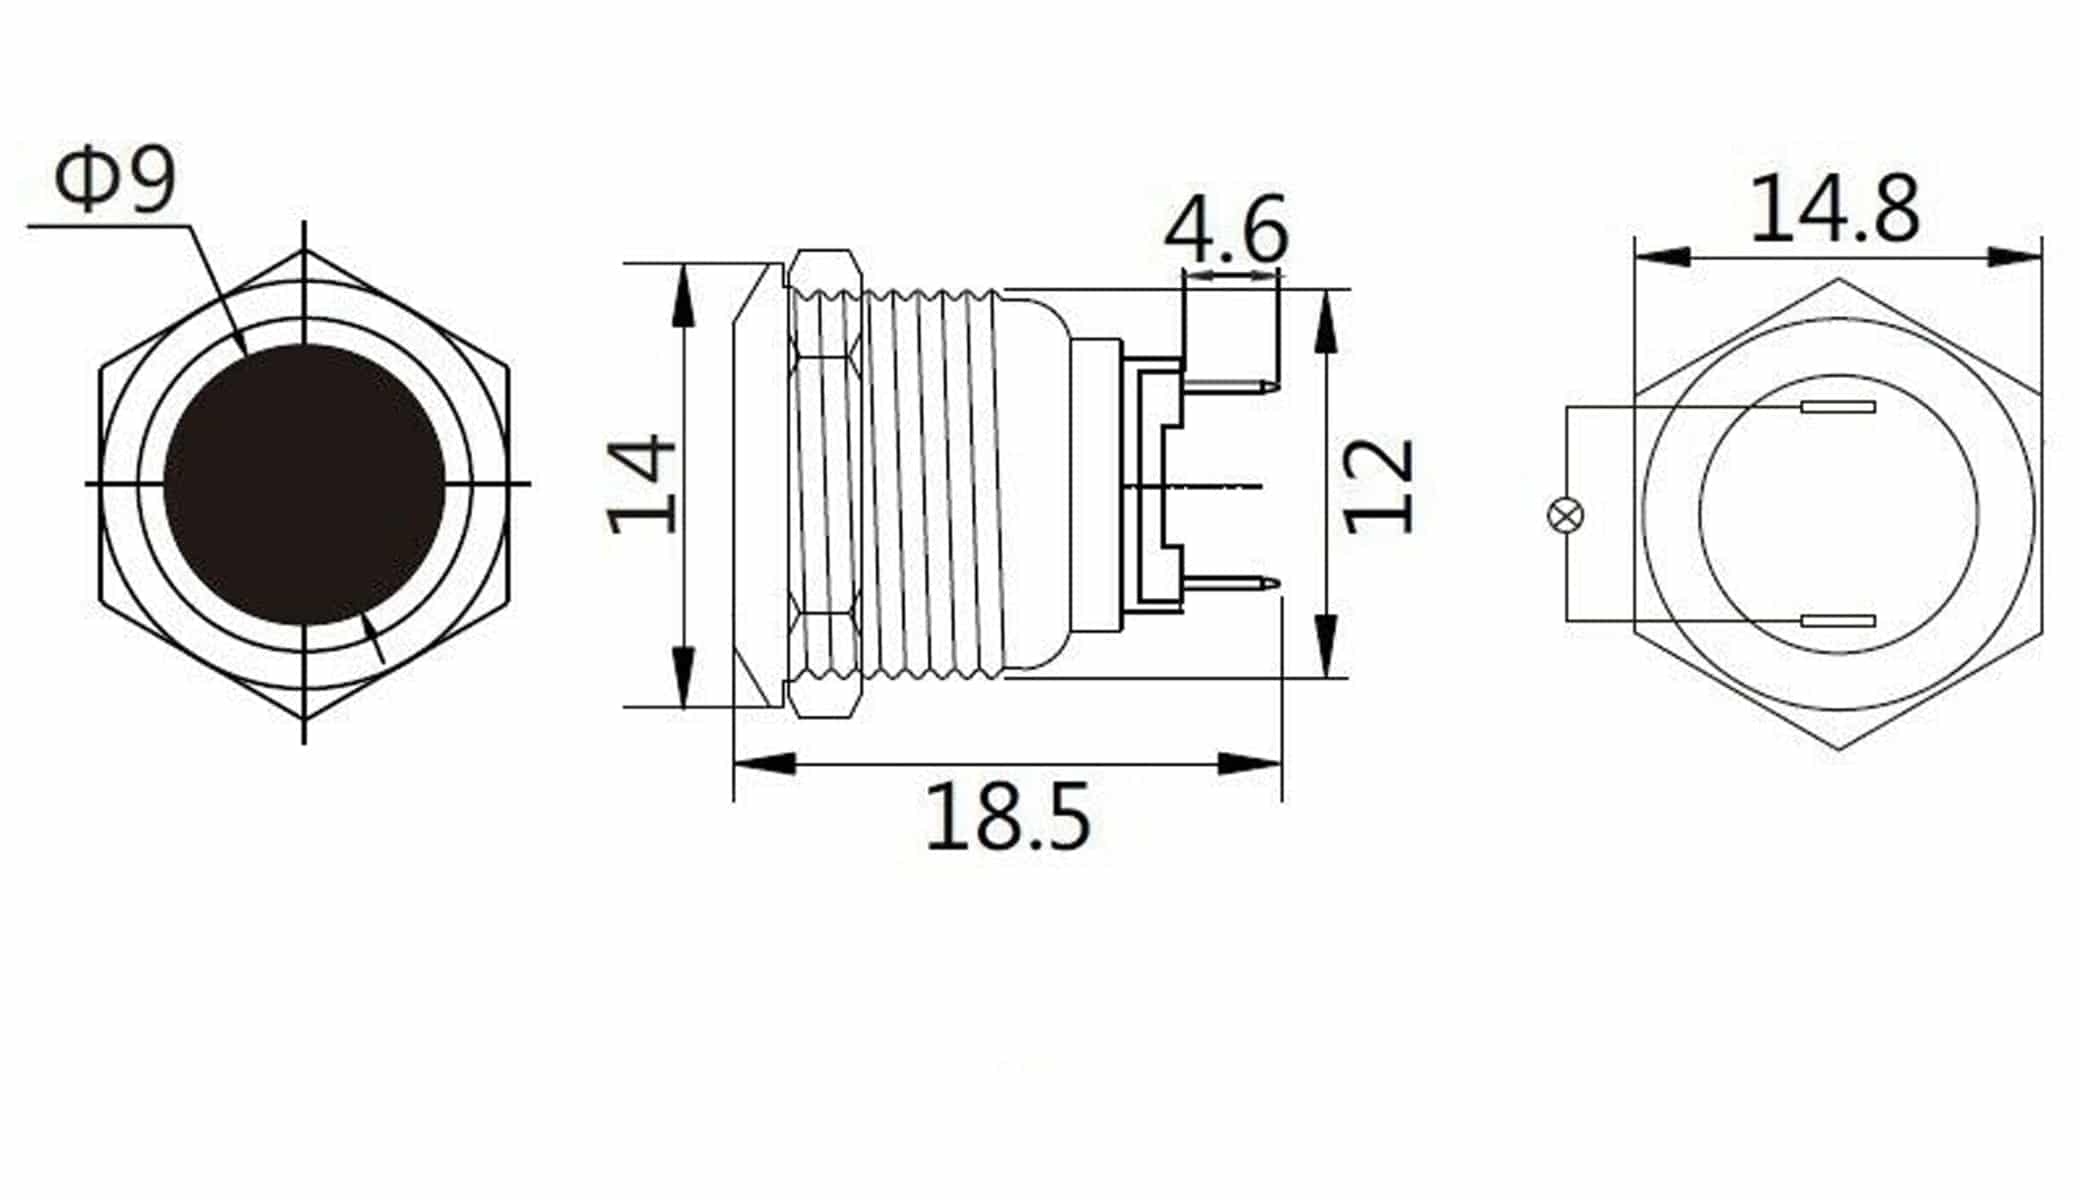 LED-Kontrollleuchte, Signalleuchte 12V, Grün, Ø12 mm, Messing, Tiefe 18 mm